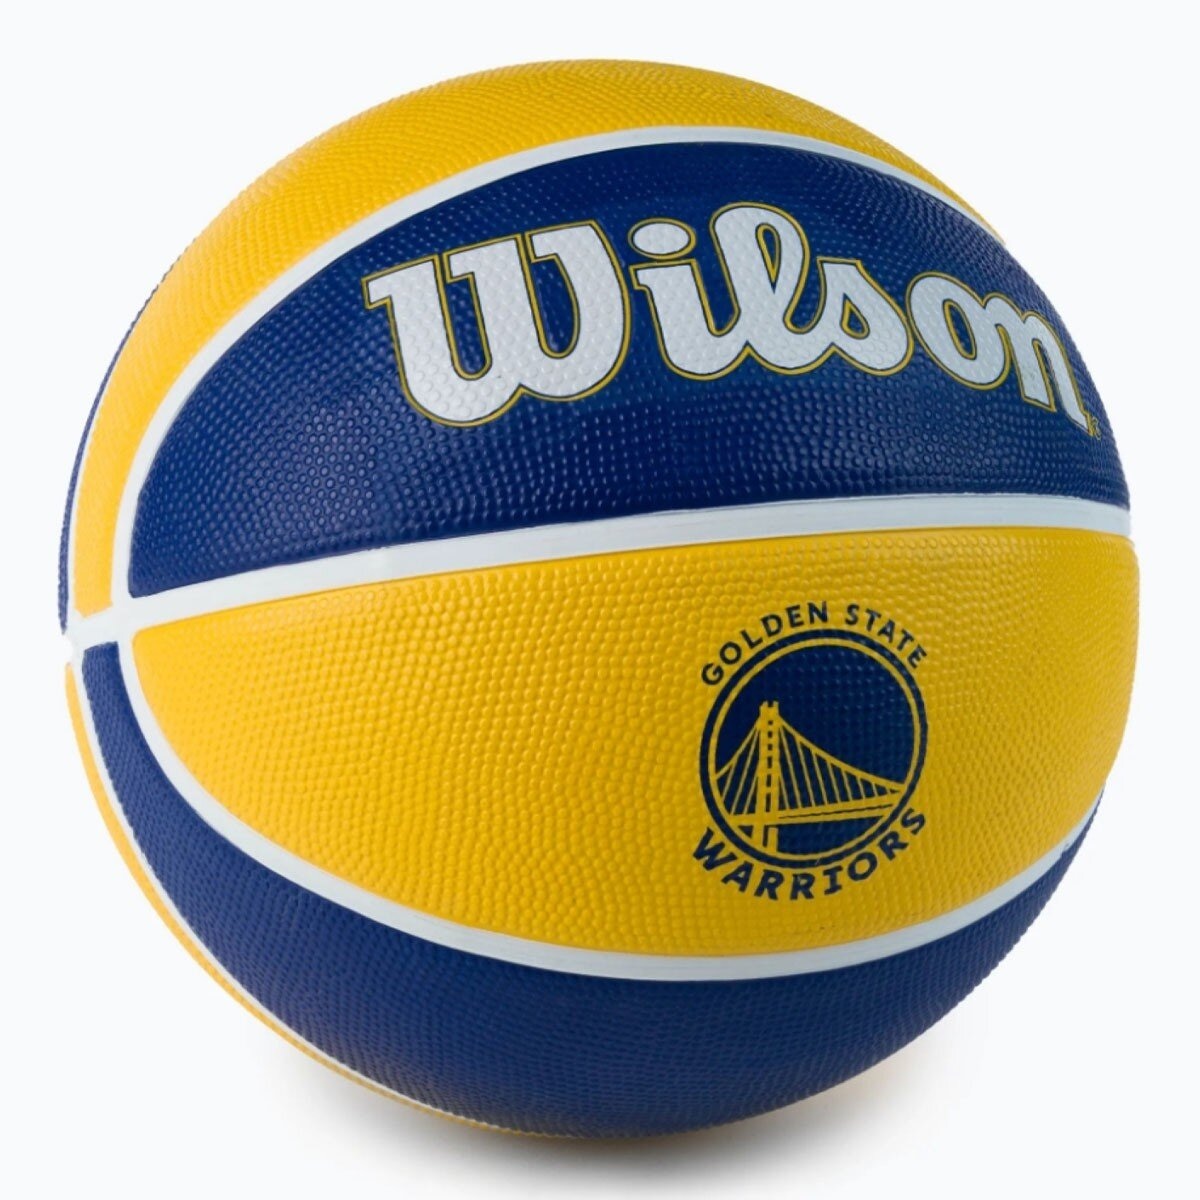 威爾森 橡膠籃球 NBA 隊徽系列 勇士隊 (7號)